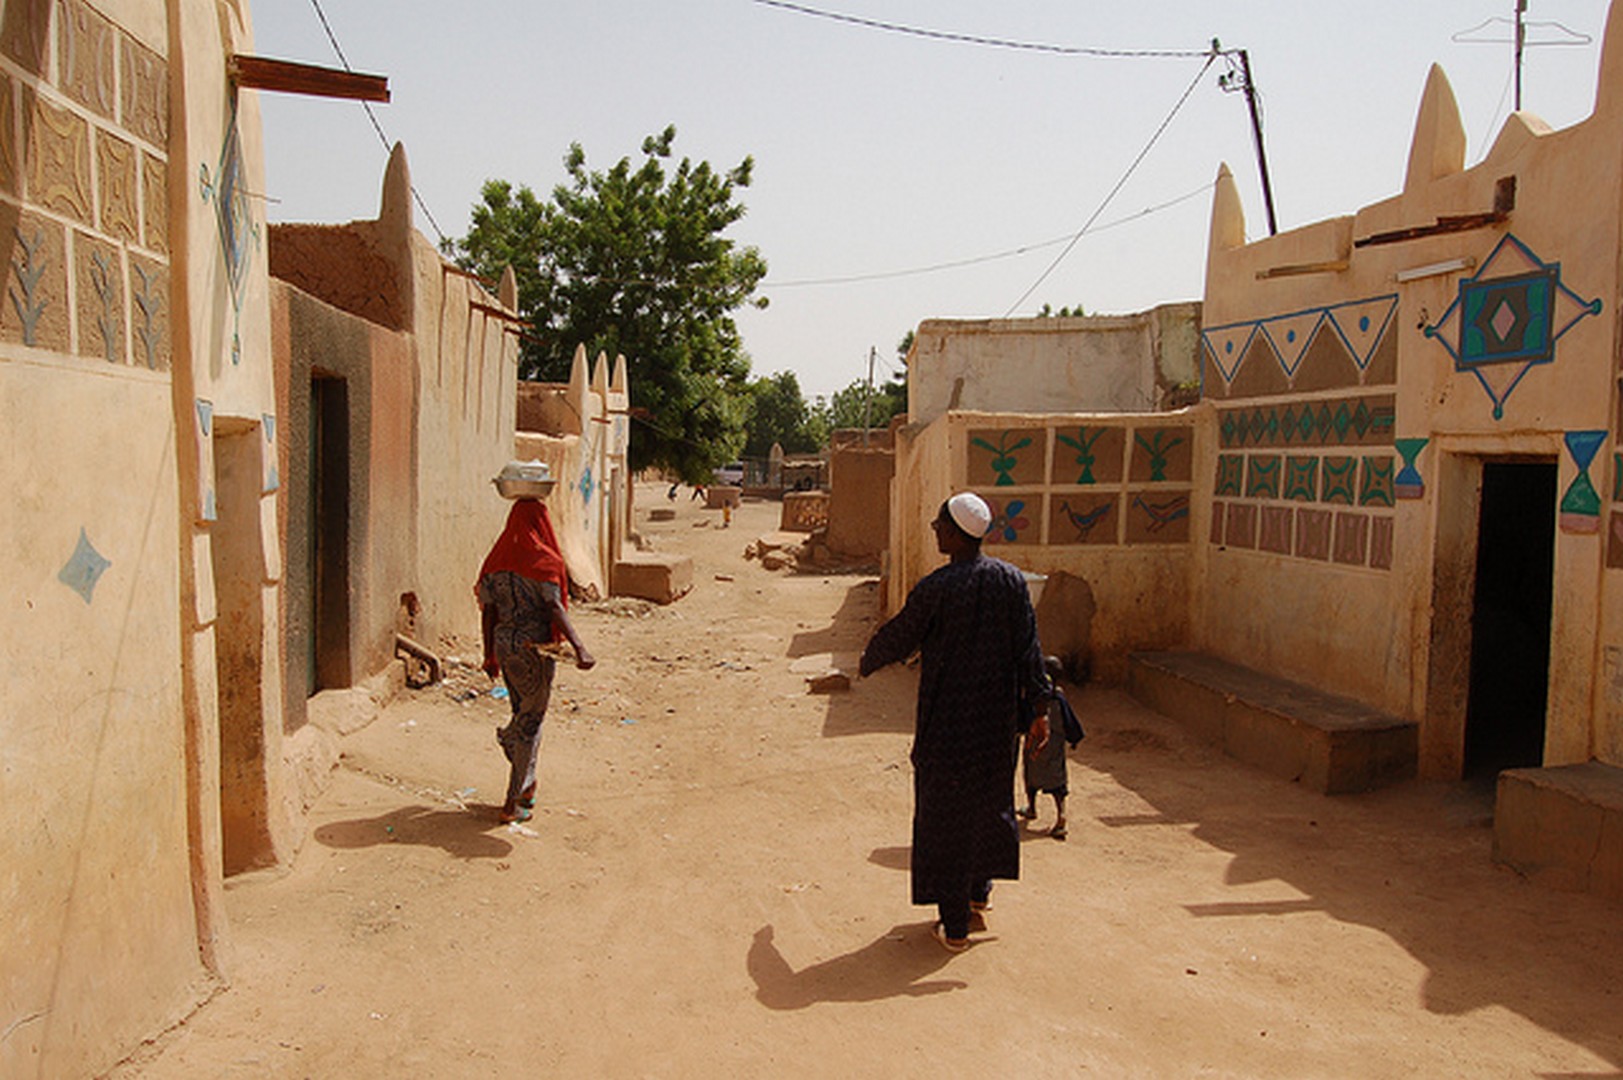 Une rue de la ville de Zinder, au Niger (Photo:diasundKompott/Flickr/CC BY-SA 2.0)